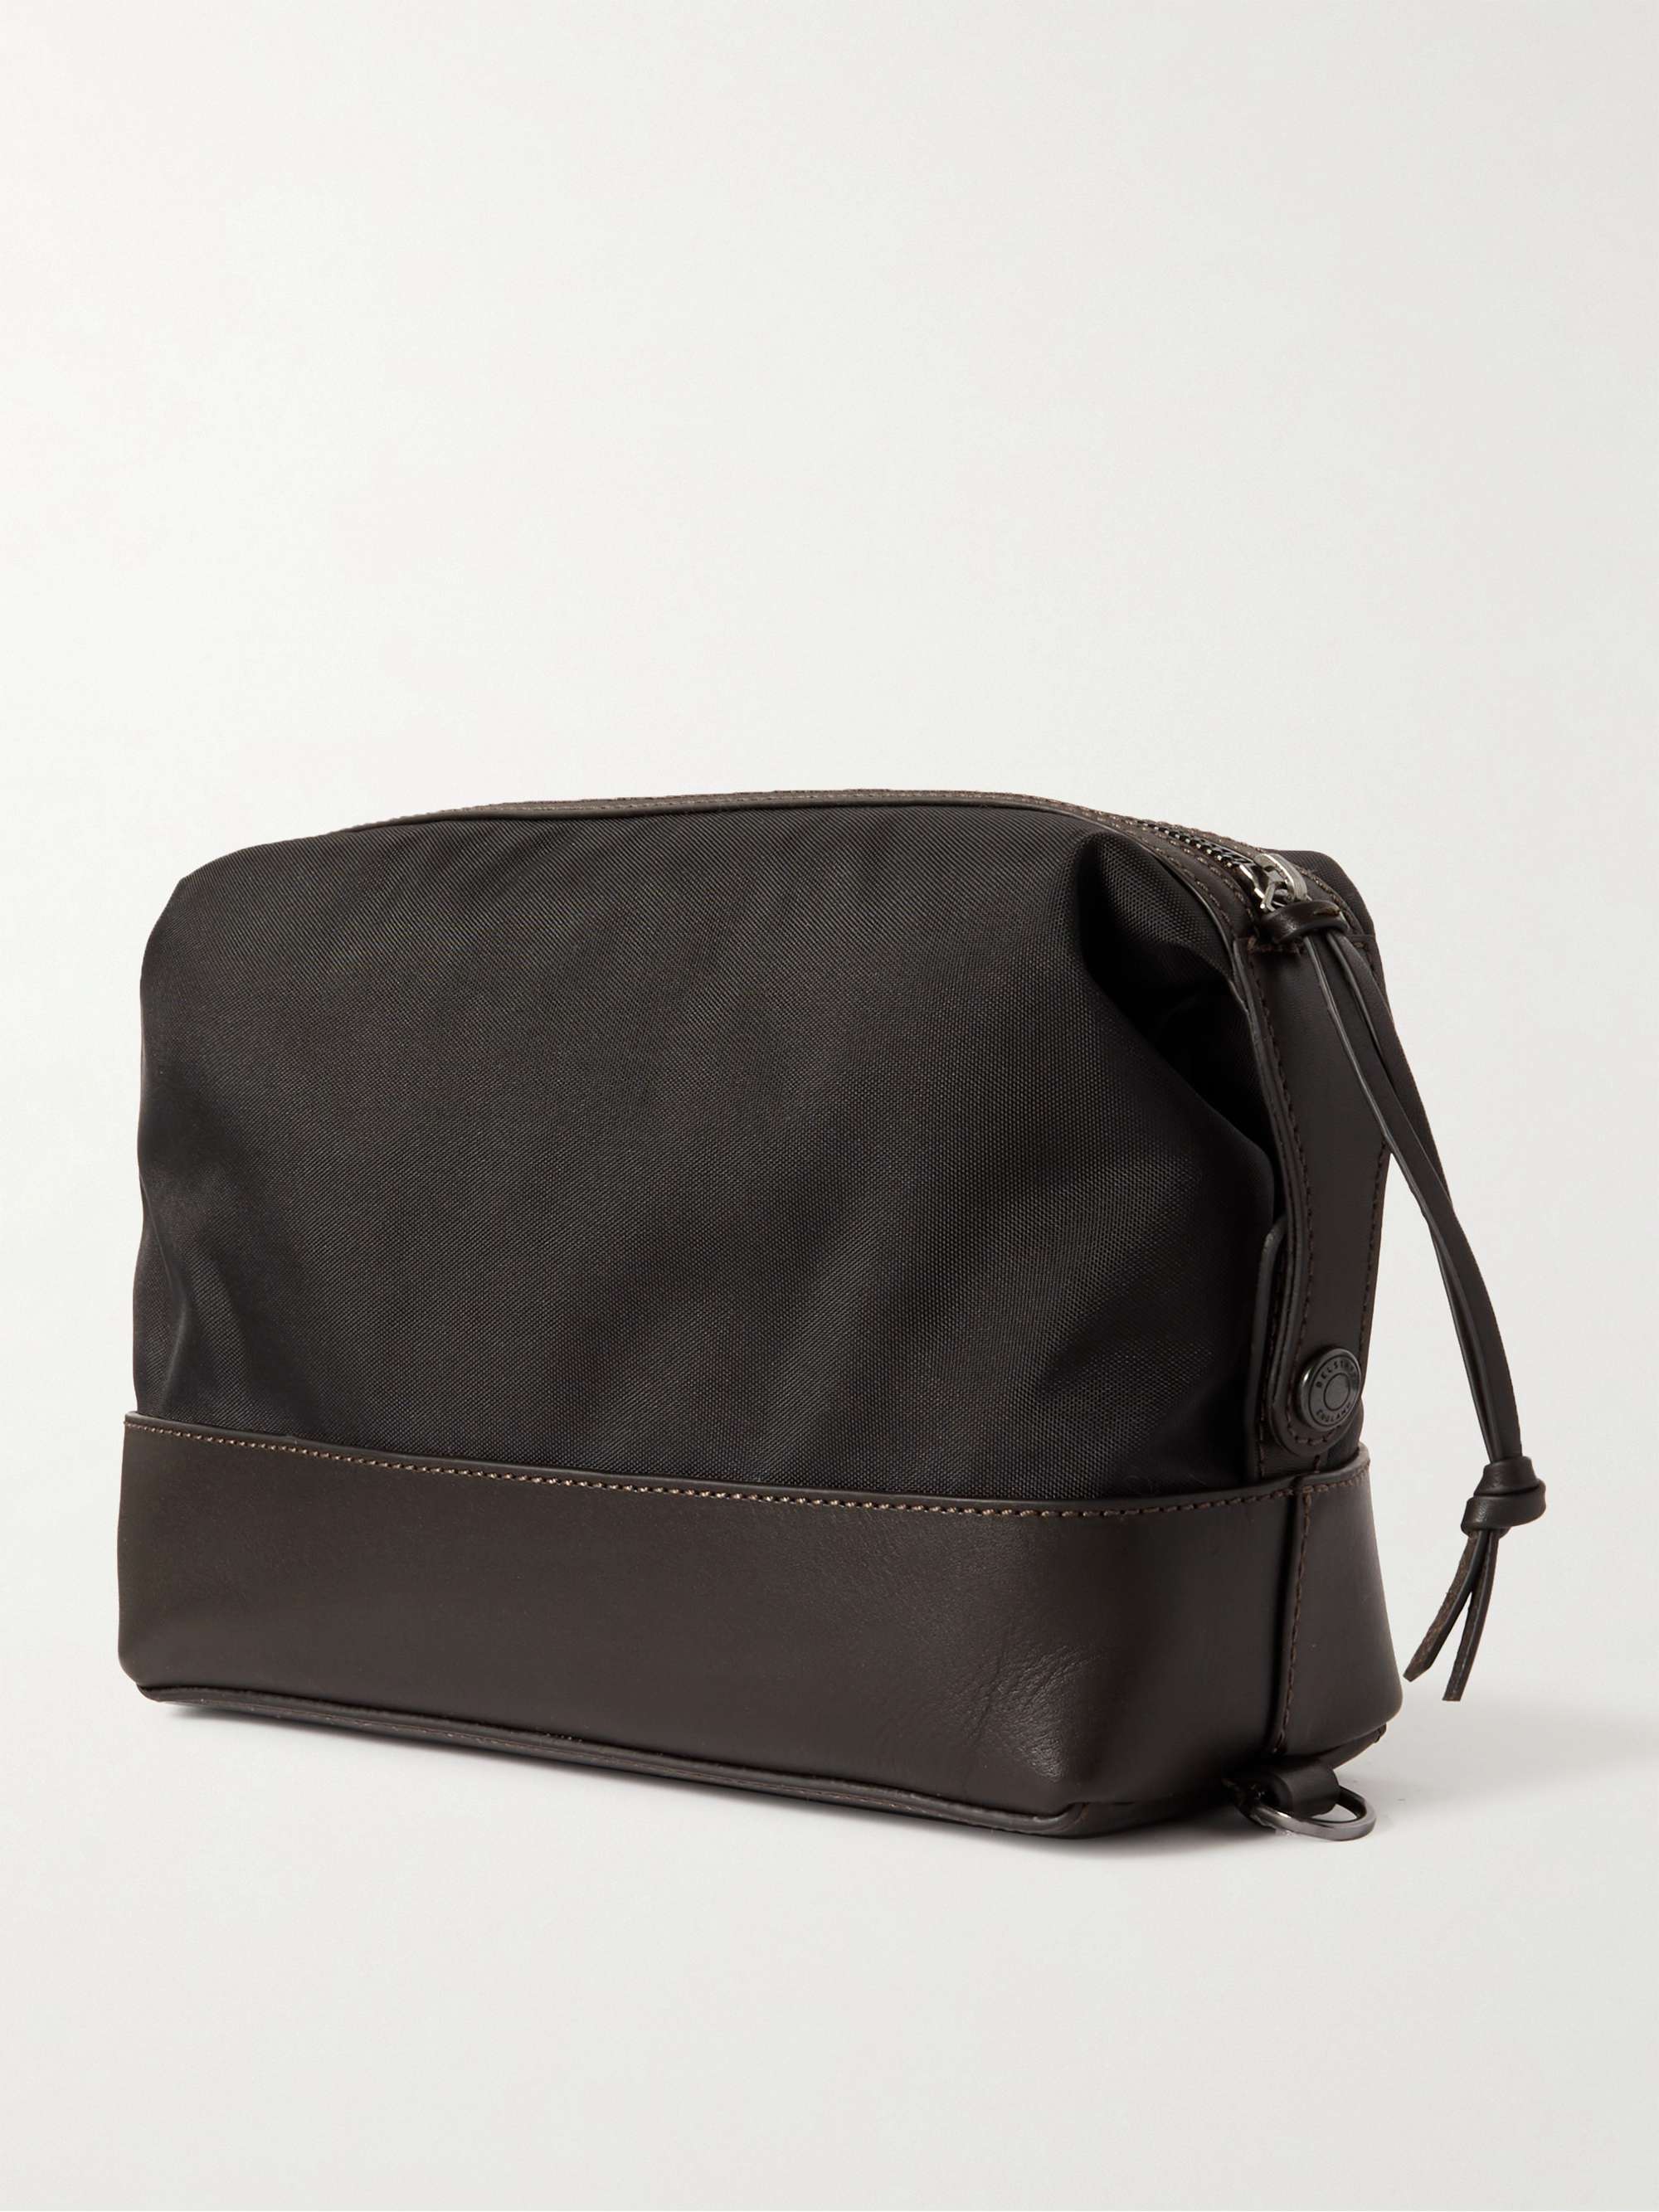 BELSTAFF Jacob Logo-Appliquéd Leather-Trimmed Nylon Wash Bag